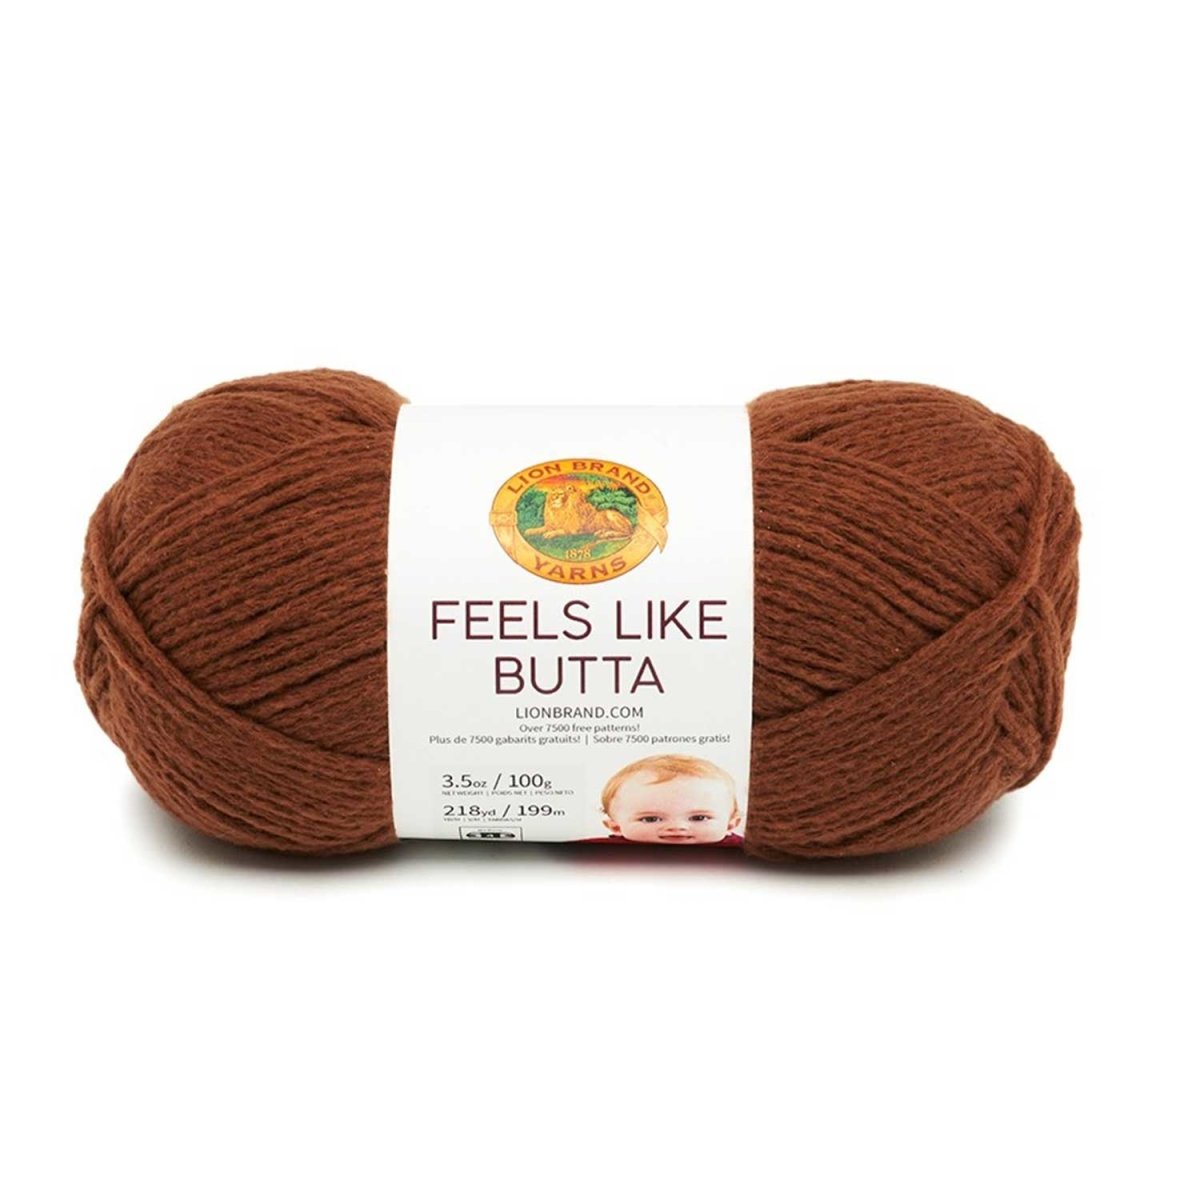 FEELS LIKE BUTTA - Crochetstores215-126